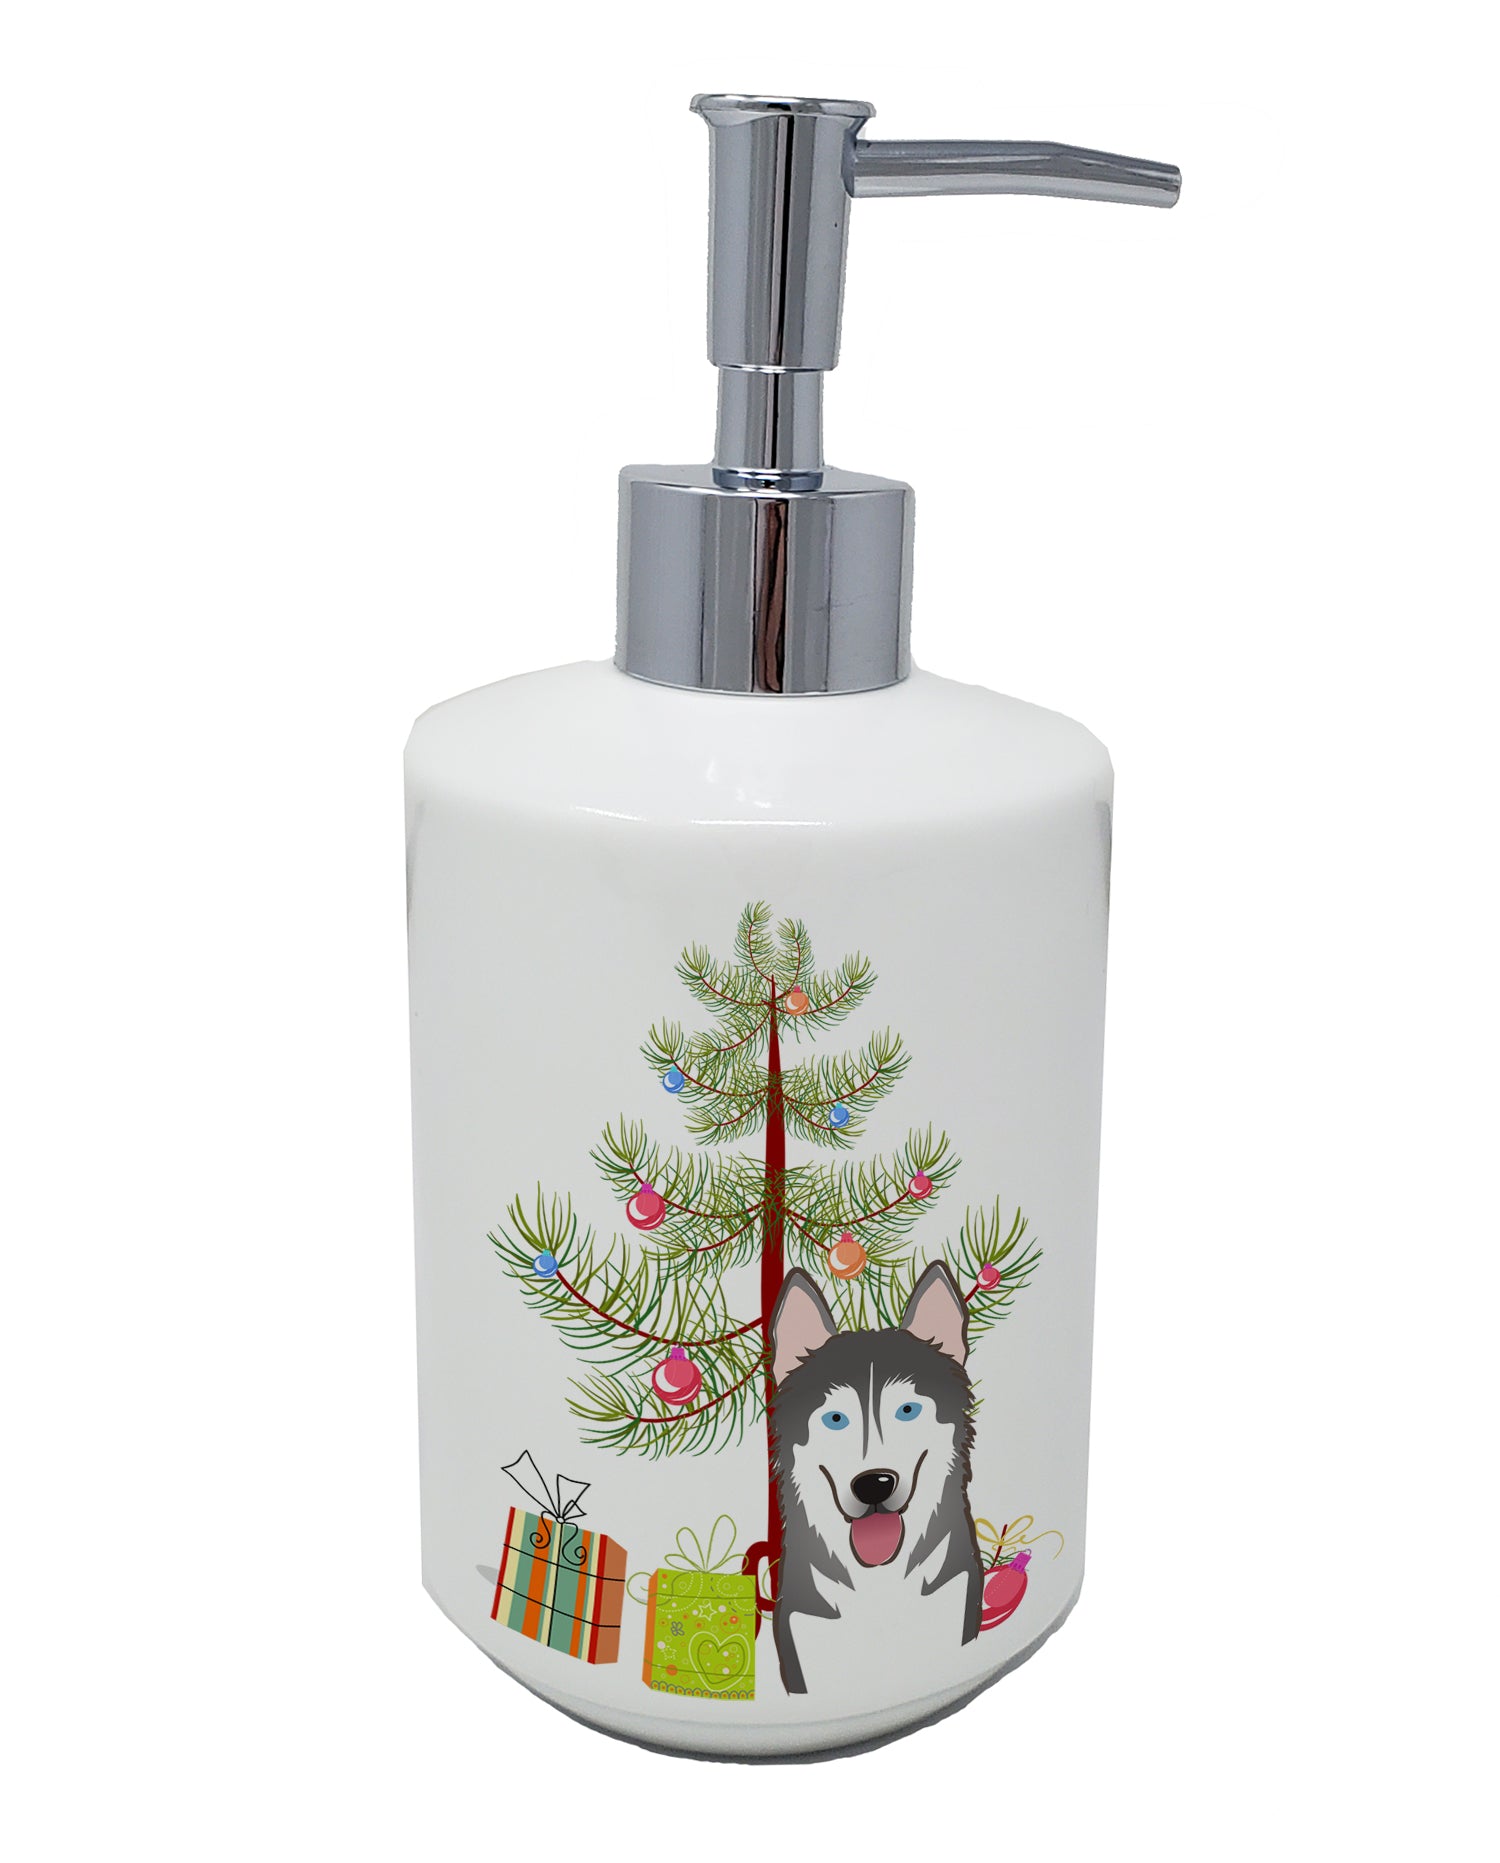 Buy this Christmas Tree and Alaskan Malamute Ceramic Soap Dispenser